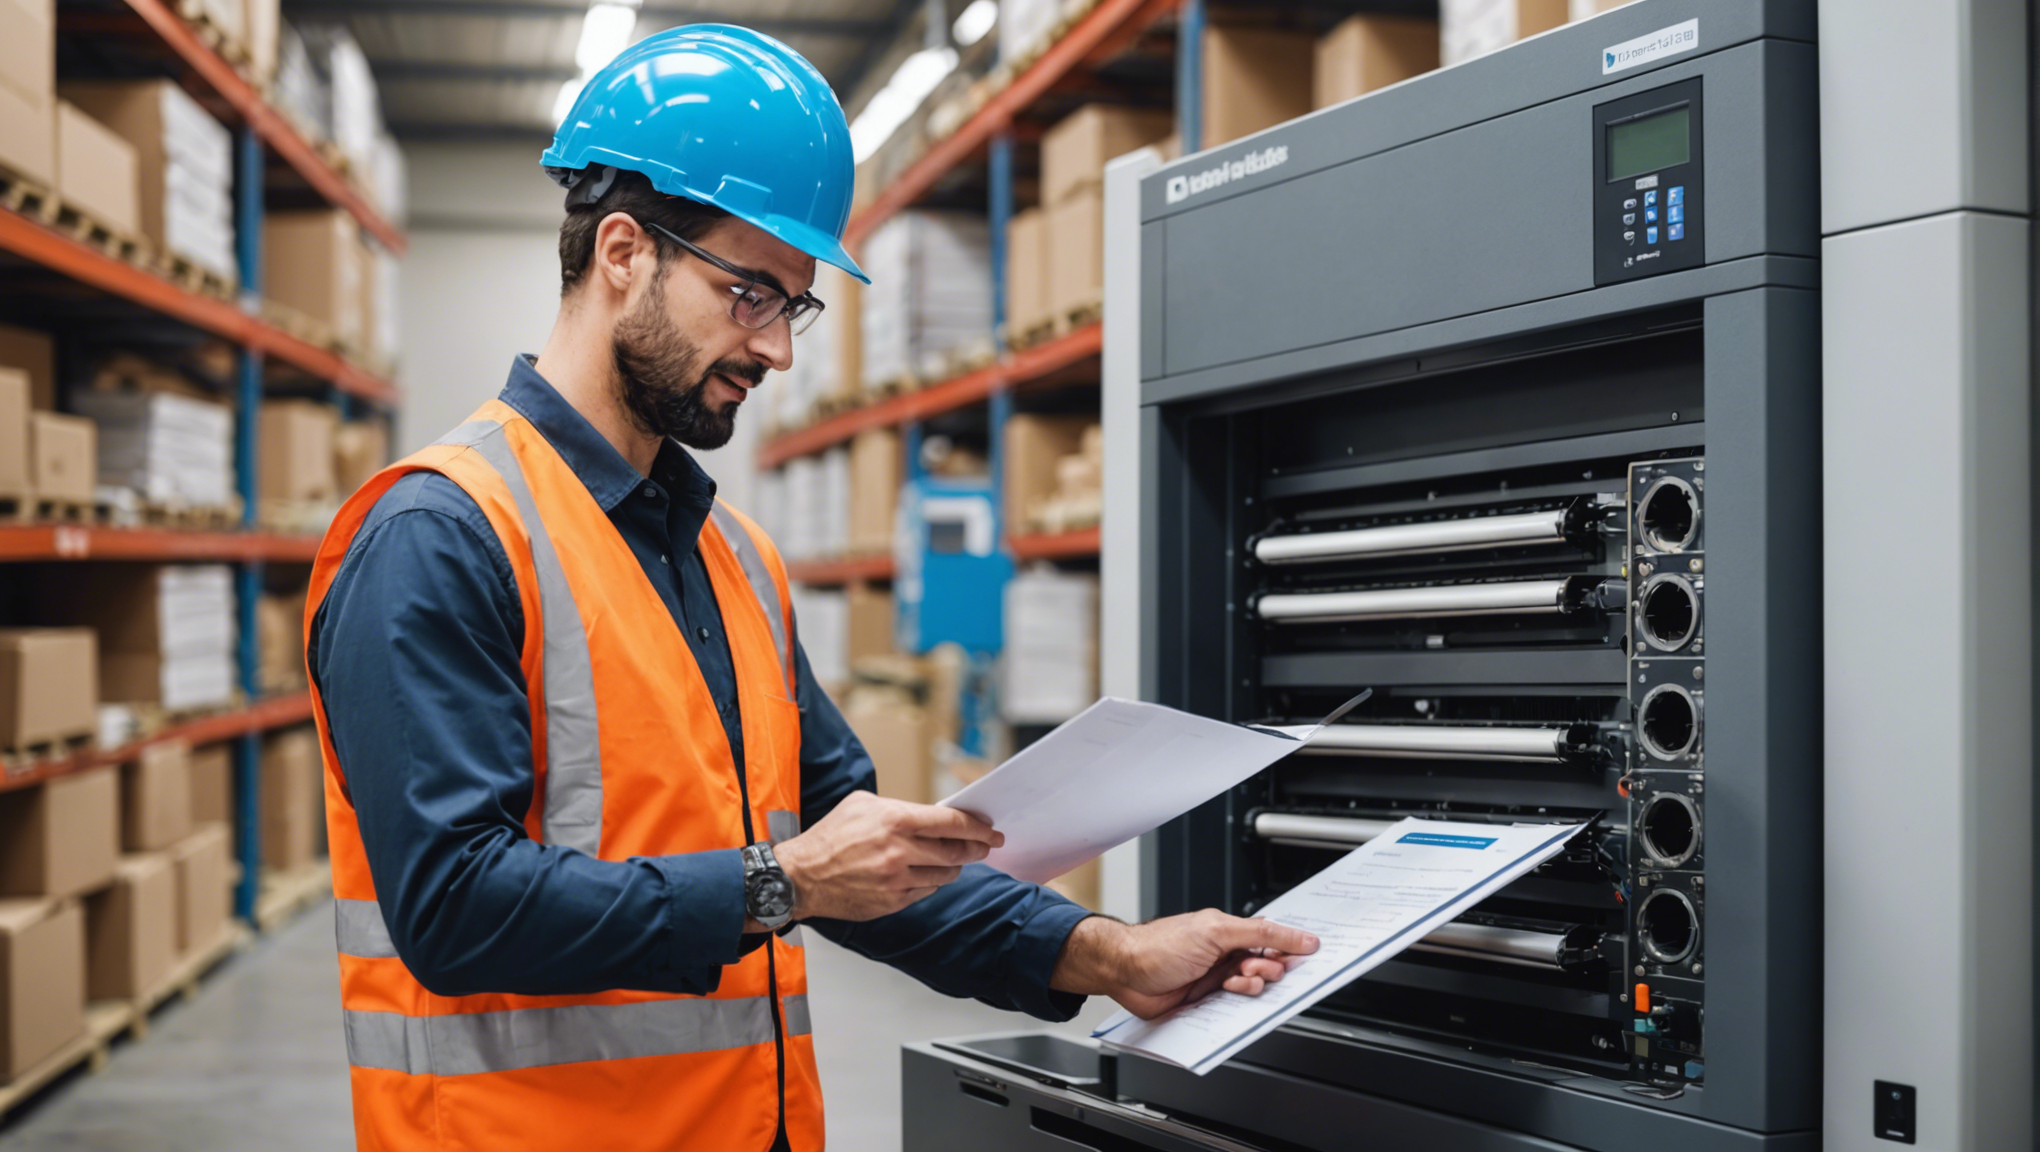 découvrez notre sélection d'imprimantes professionnelles à prix abordables avec contrats de maintenance inclus pour une efficacité optimale.